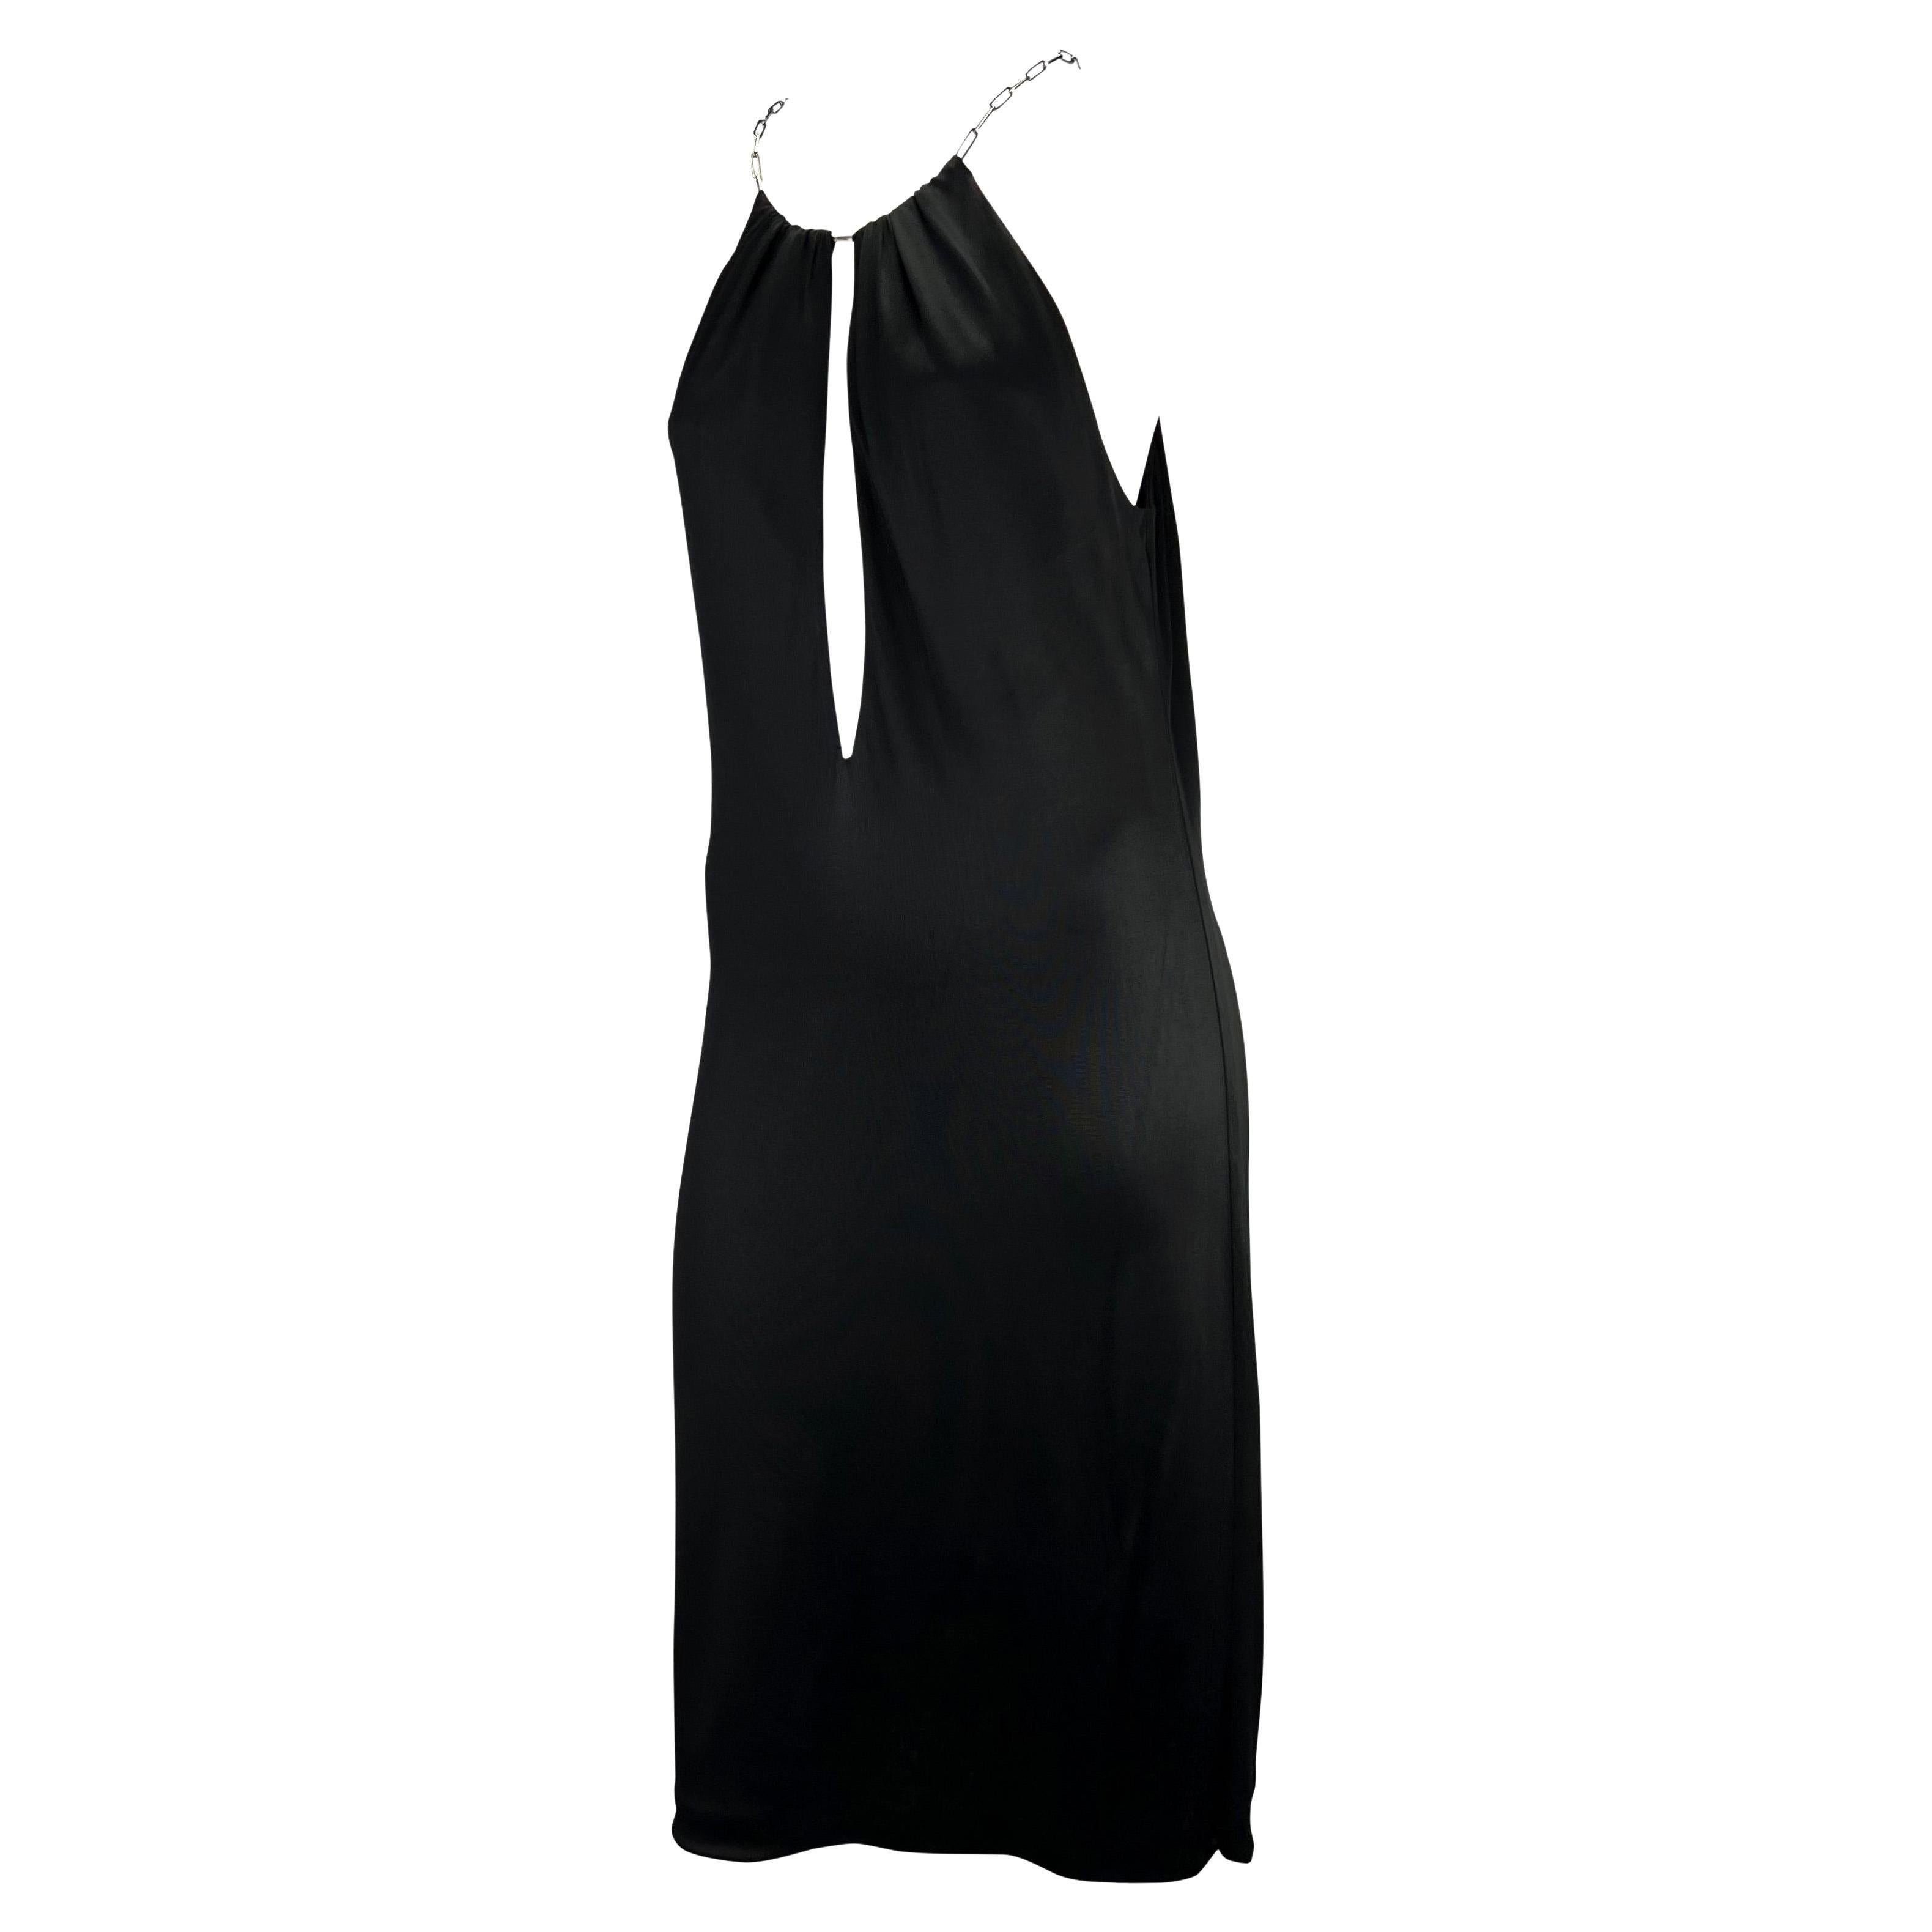 Présentation d'une magnifique robe plongeante Gucci, dessinée par Tom Ford. Issue de la collection Printemps/Été 2000, cette robe est suspendue à un collier en maillons de chaîne argentés. Conçue en viscose noire, cette robe se drape parfaitement